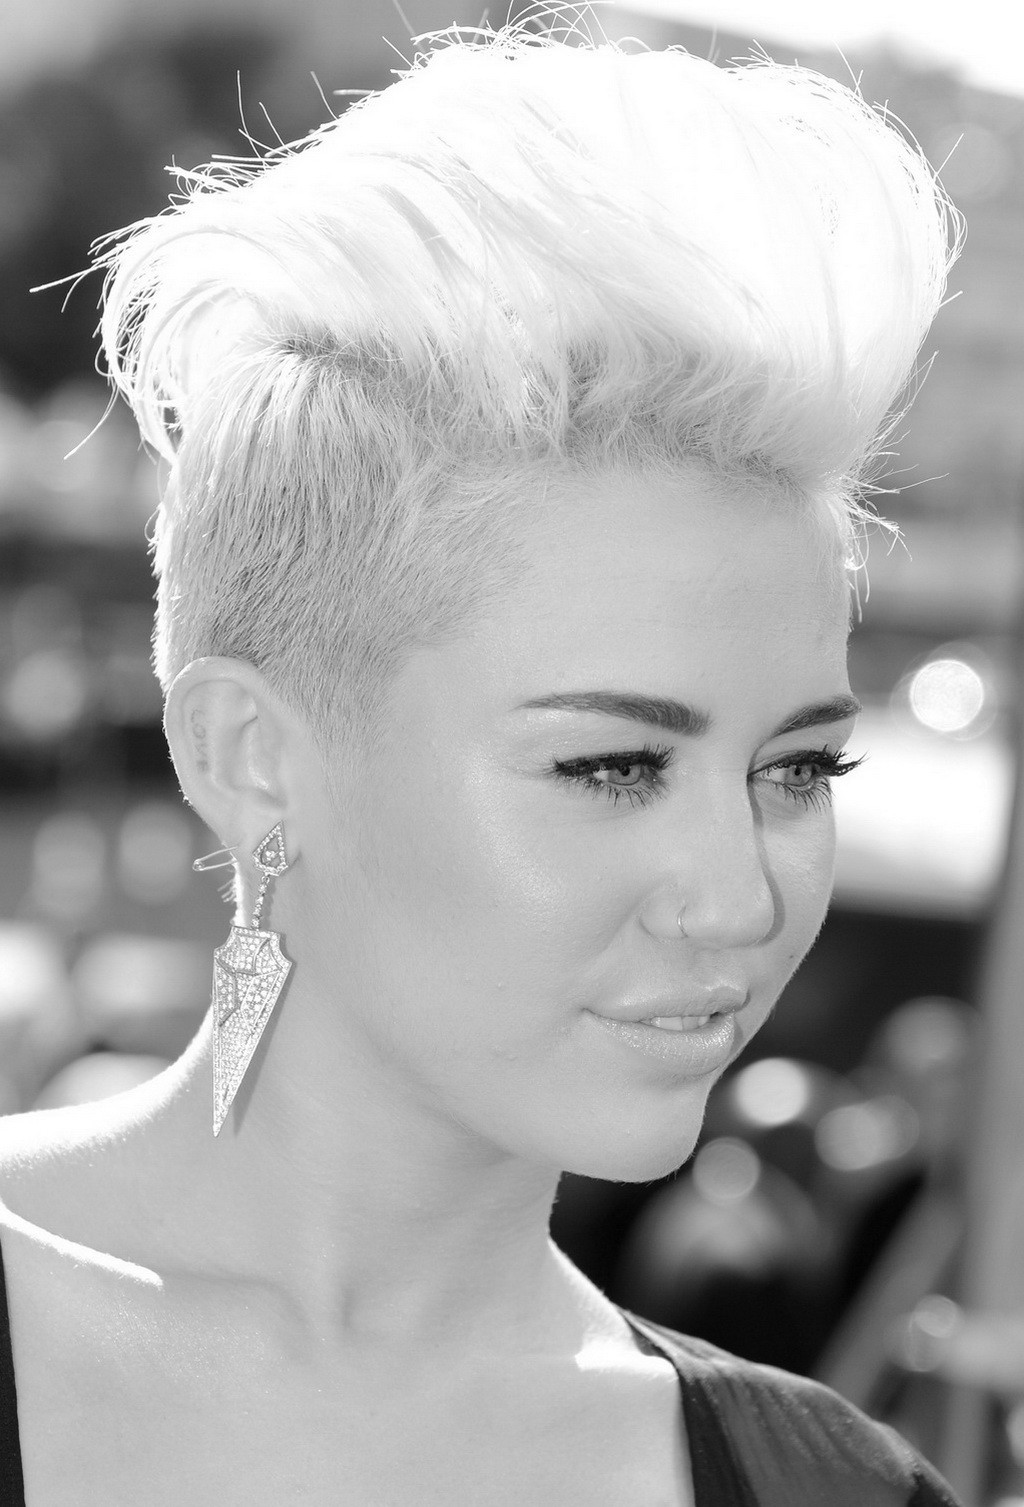 Miley cyrus despampanante en una sesion de fotos en lenceria y casual para su pagina web
 #75253141